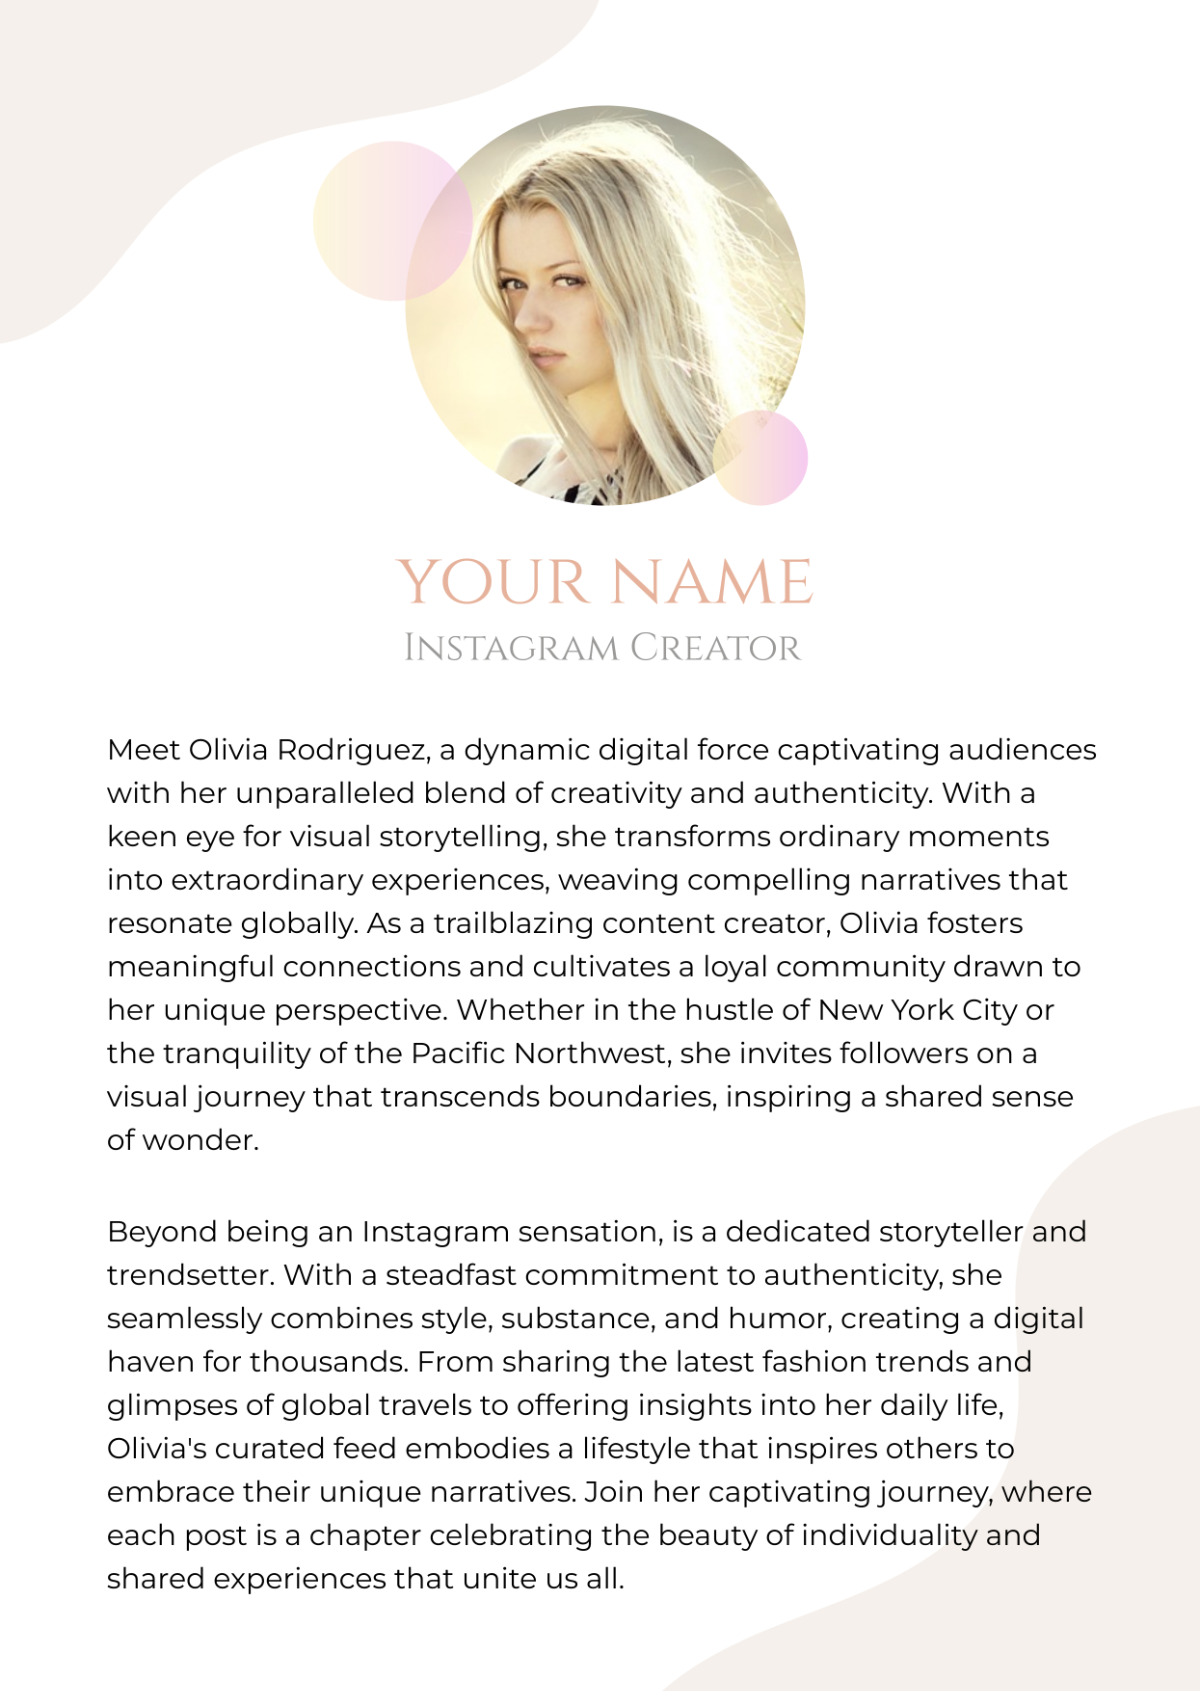 Professional Bio for Instagram Creator